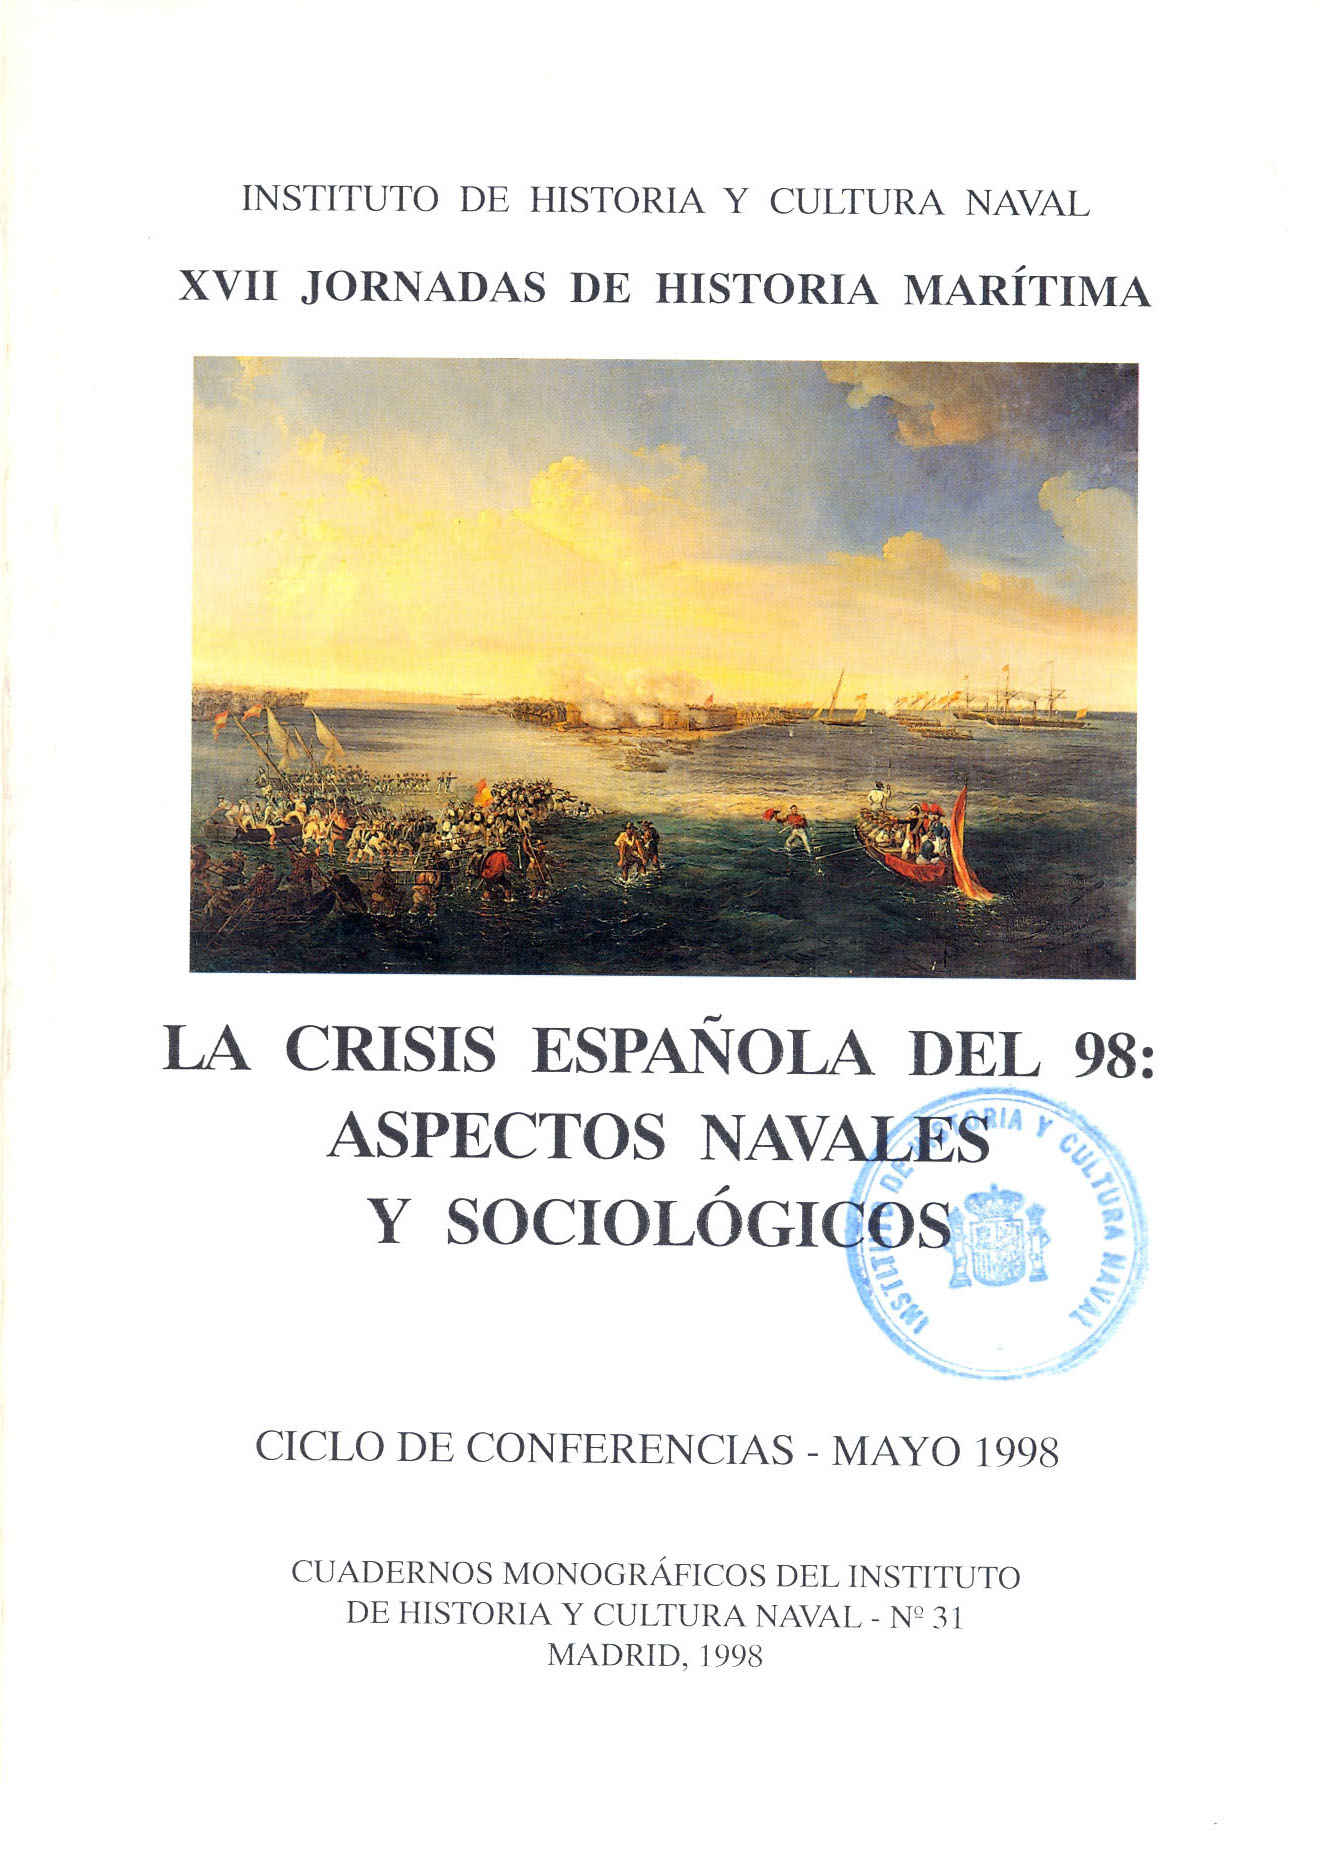 La crisis española del 98: aspectos navales y sociológicos